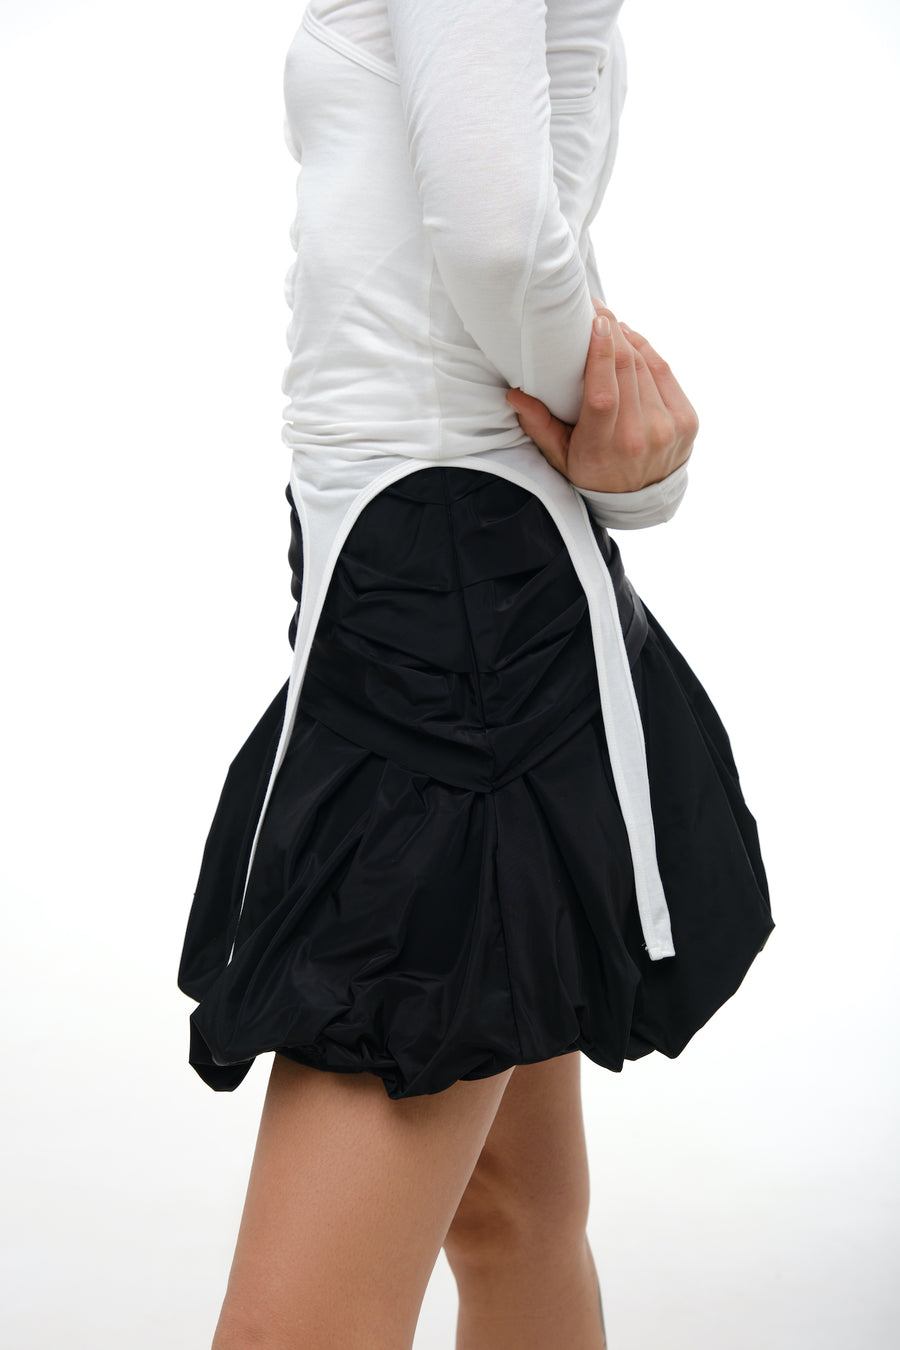 Shu Mini Skirt in black